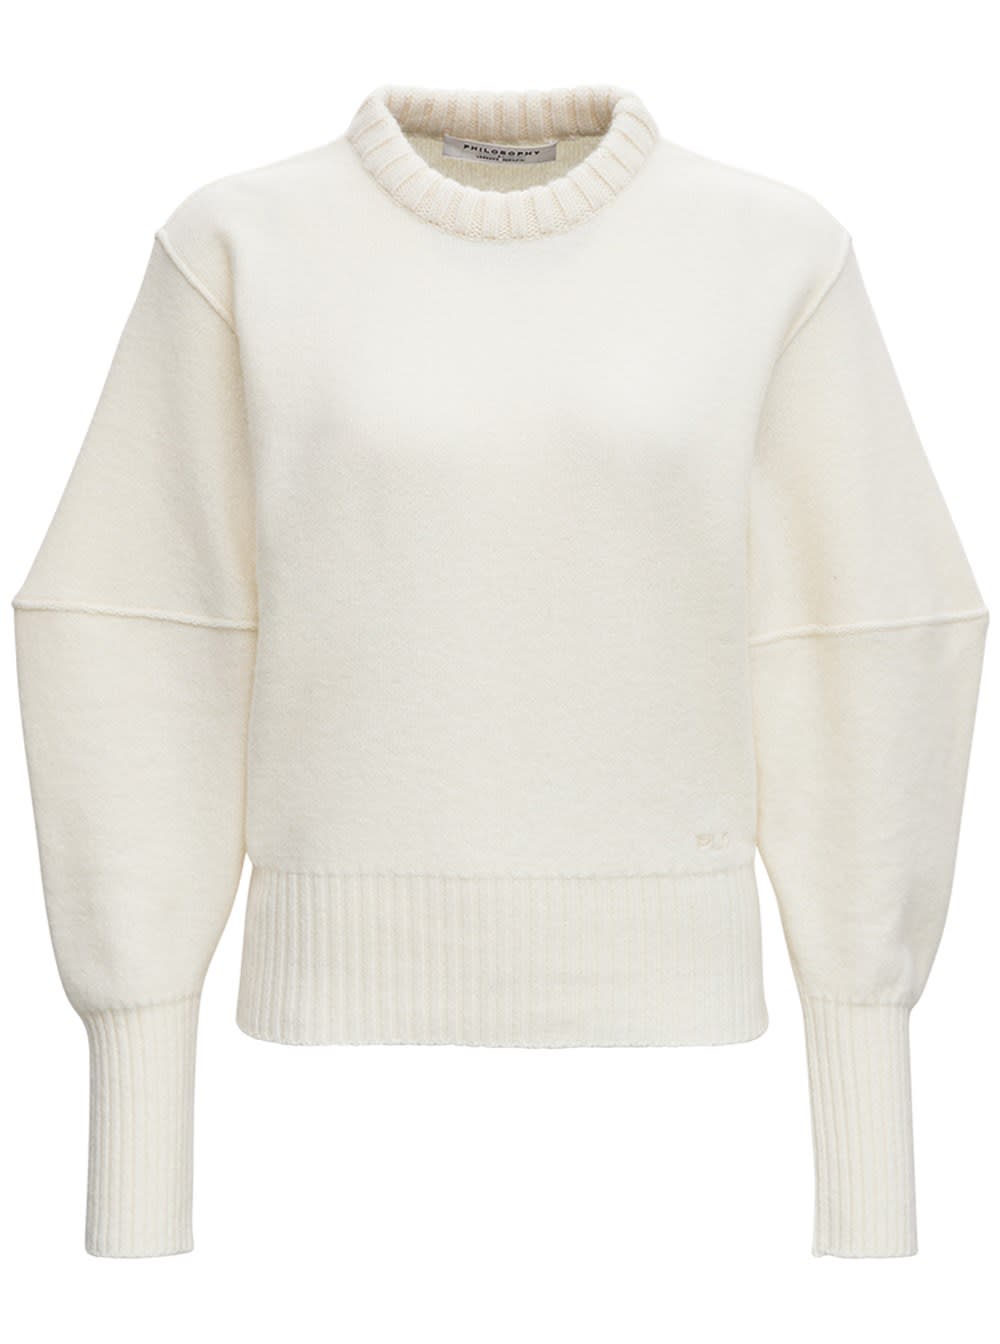 Philosophy di Lorenzo Serafini White Merino Wool Sweater